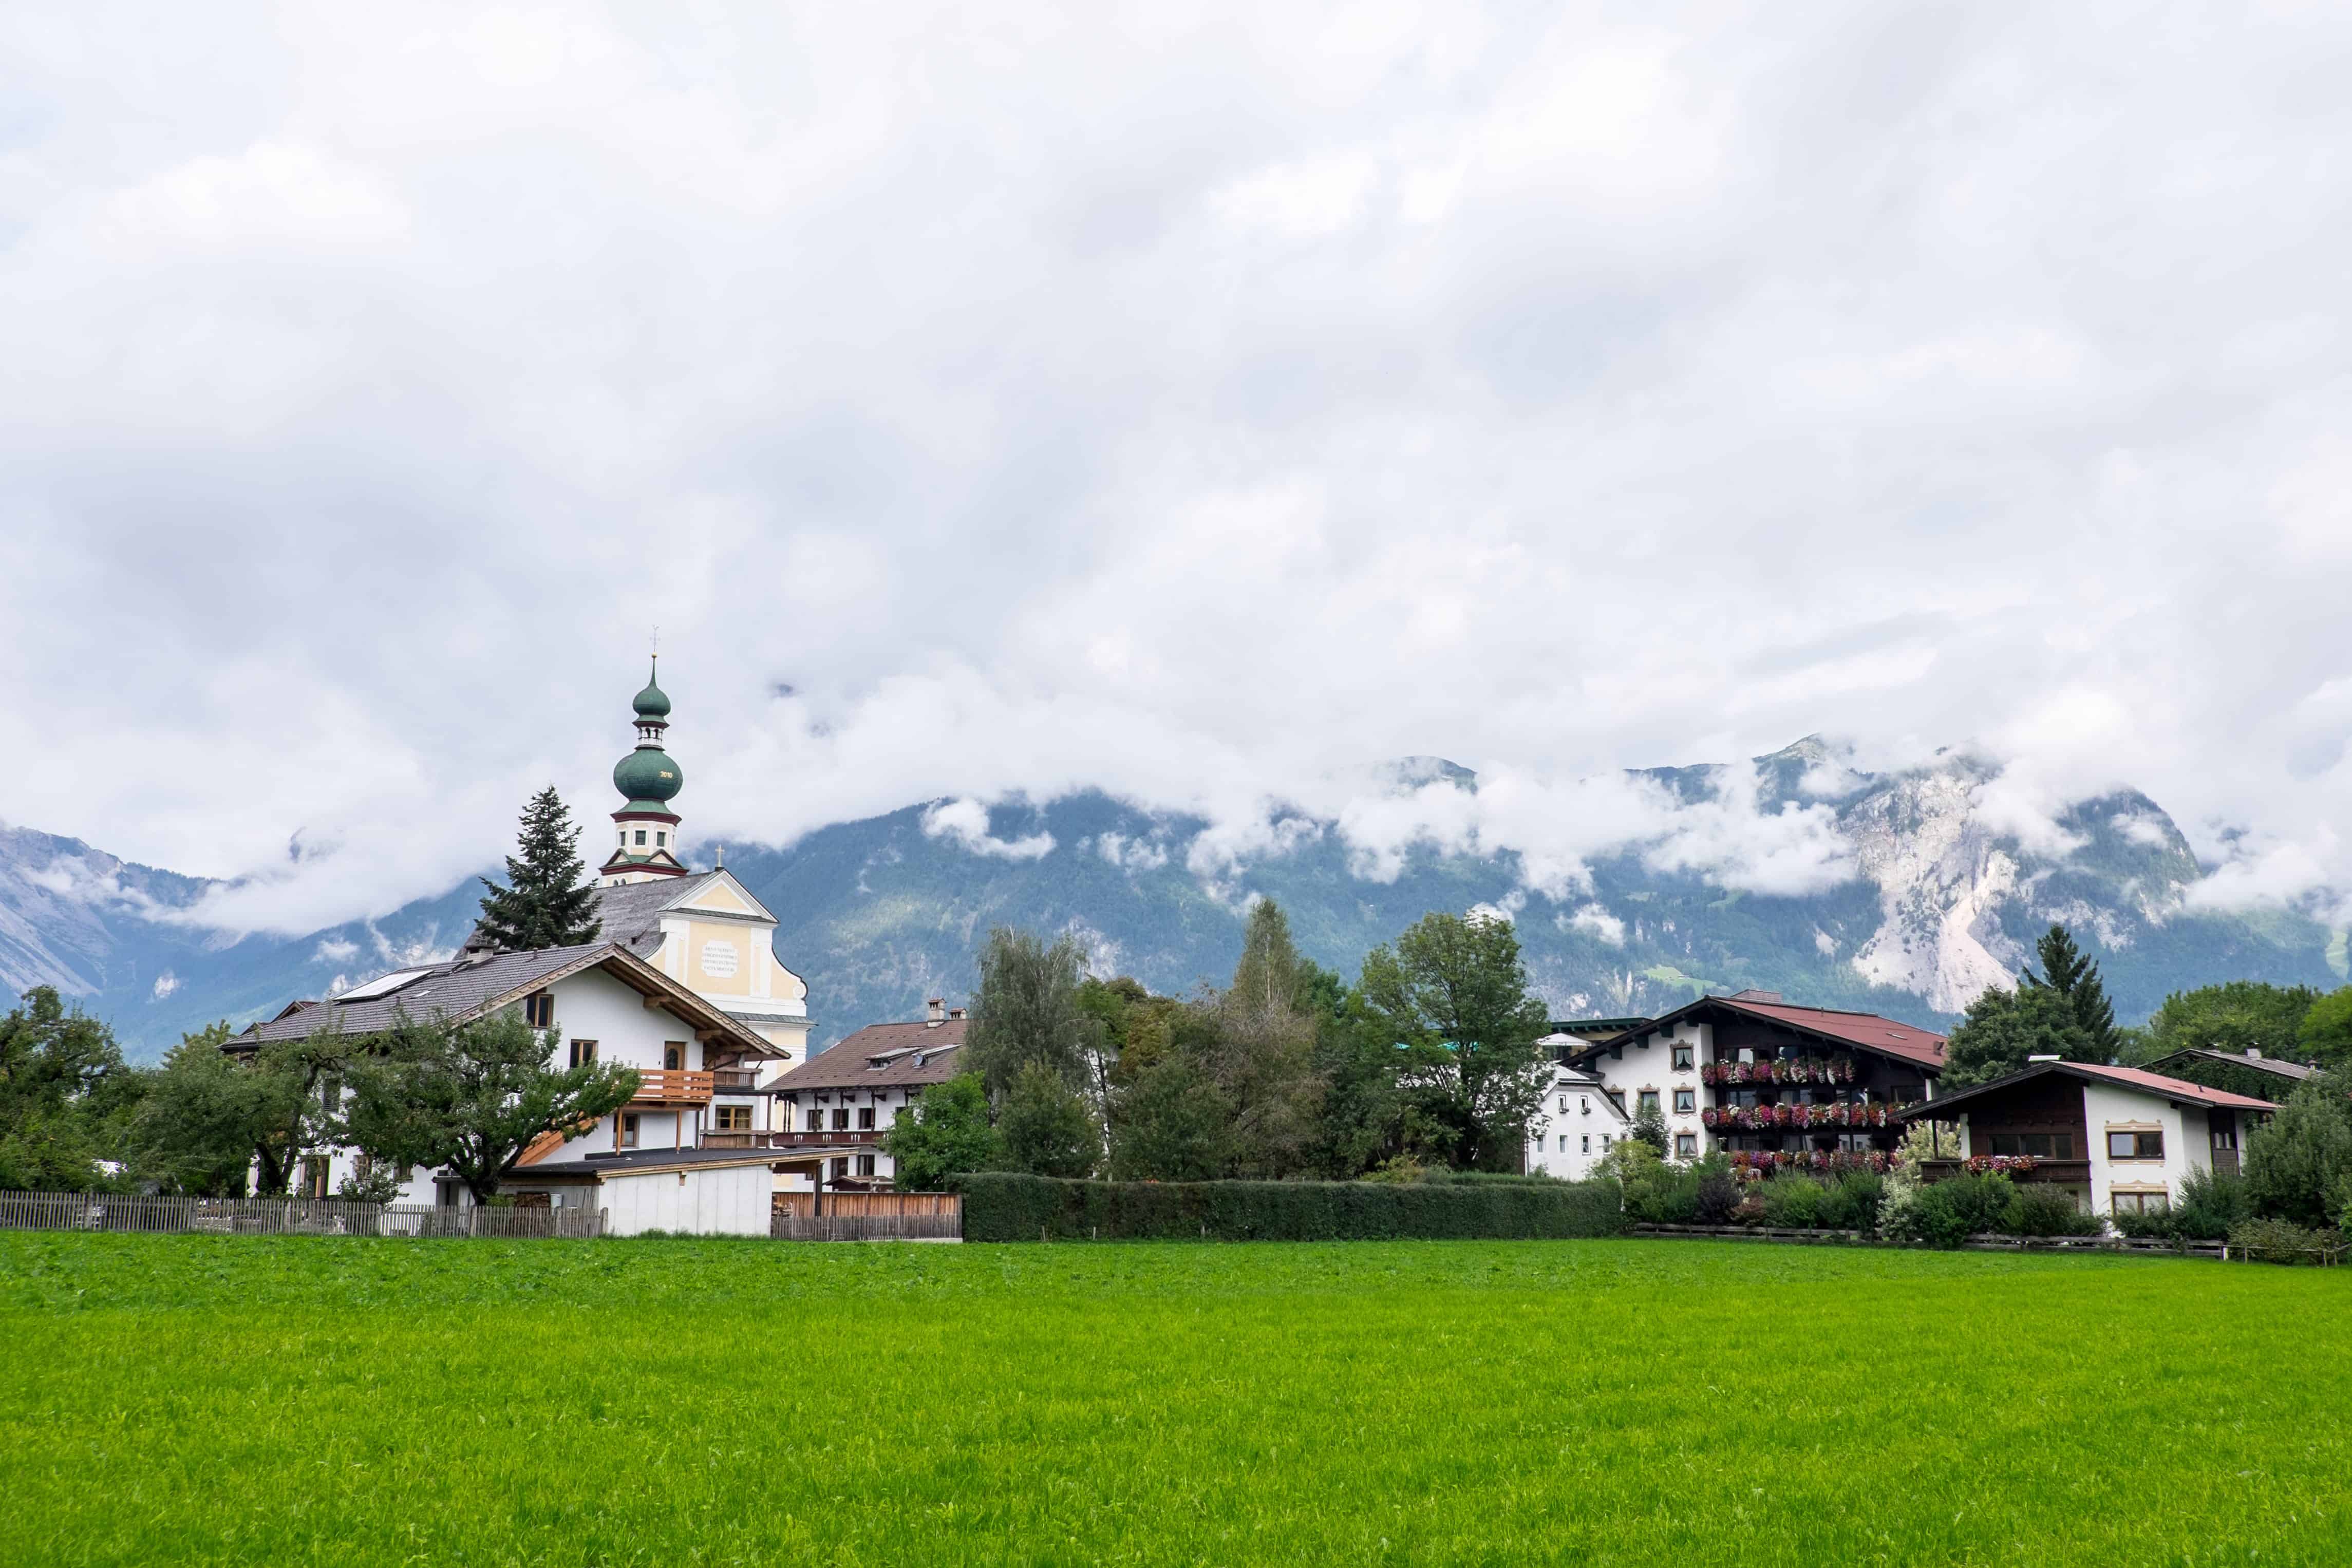 Village of Reith in Alpbachtal valley in Tirol, Austria